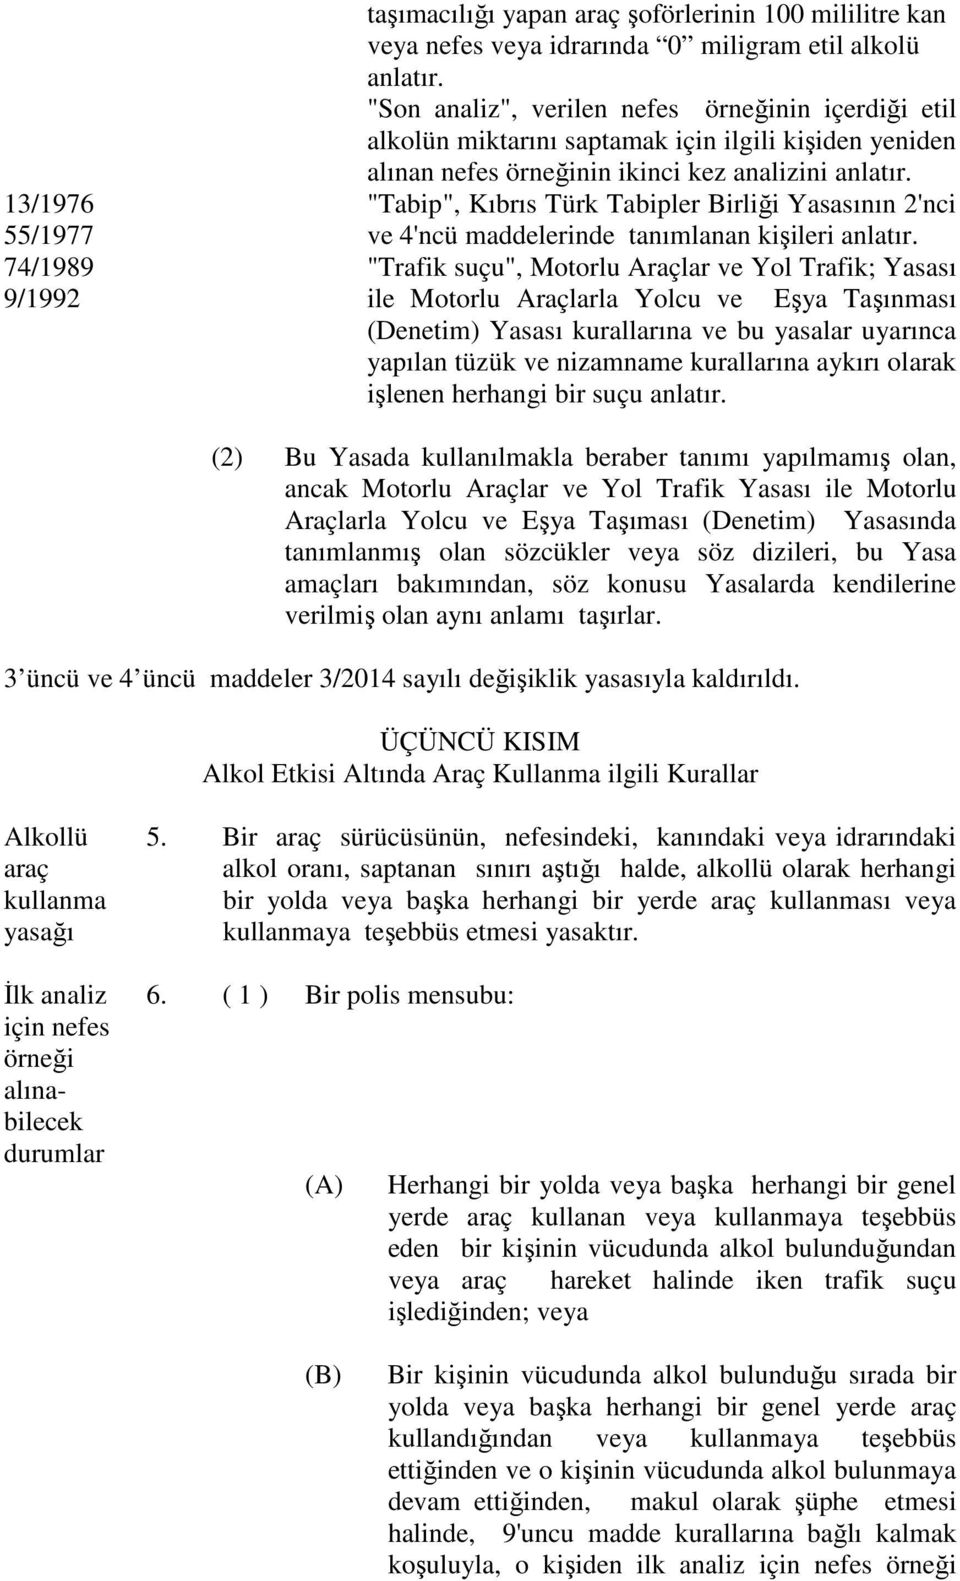 "Tabip", Kıbrıs Türk Tabipler Birliği Yasasının 2'nci ve 4'ncü maddelerinde tanımlanan kişileri anlatır.